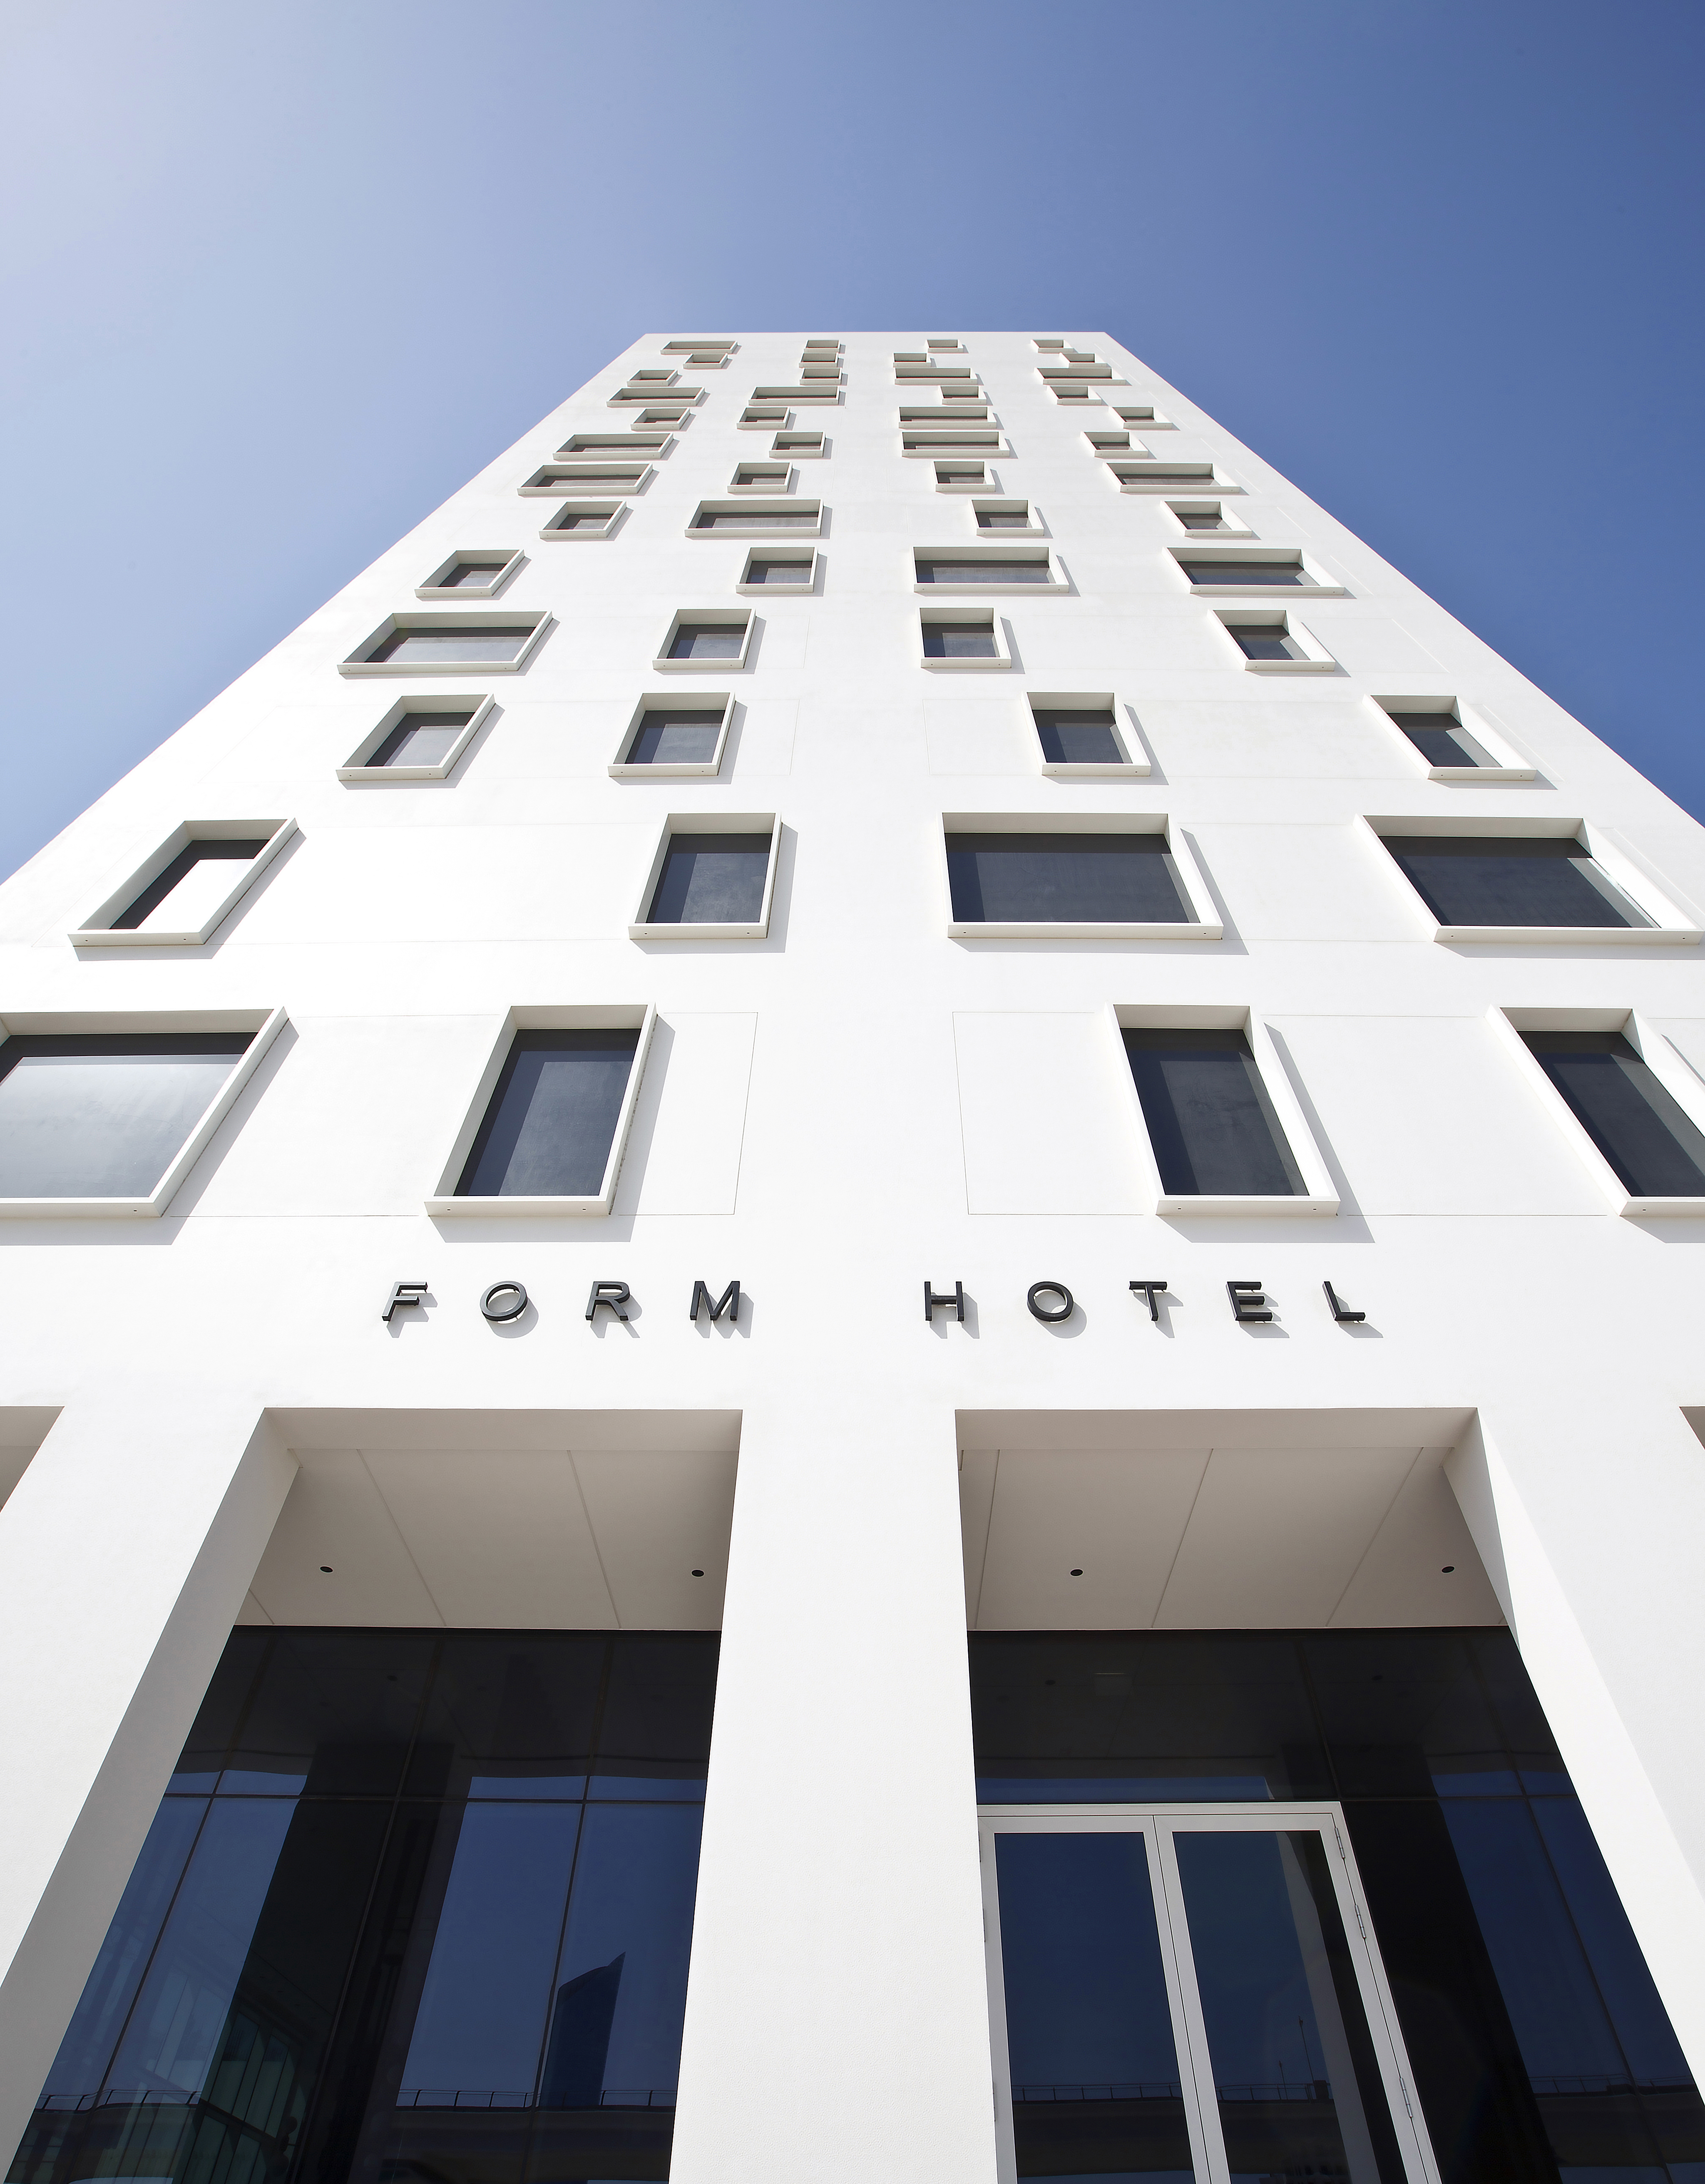 FORM Hotel Dubai - Facade (front)